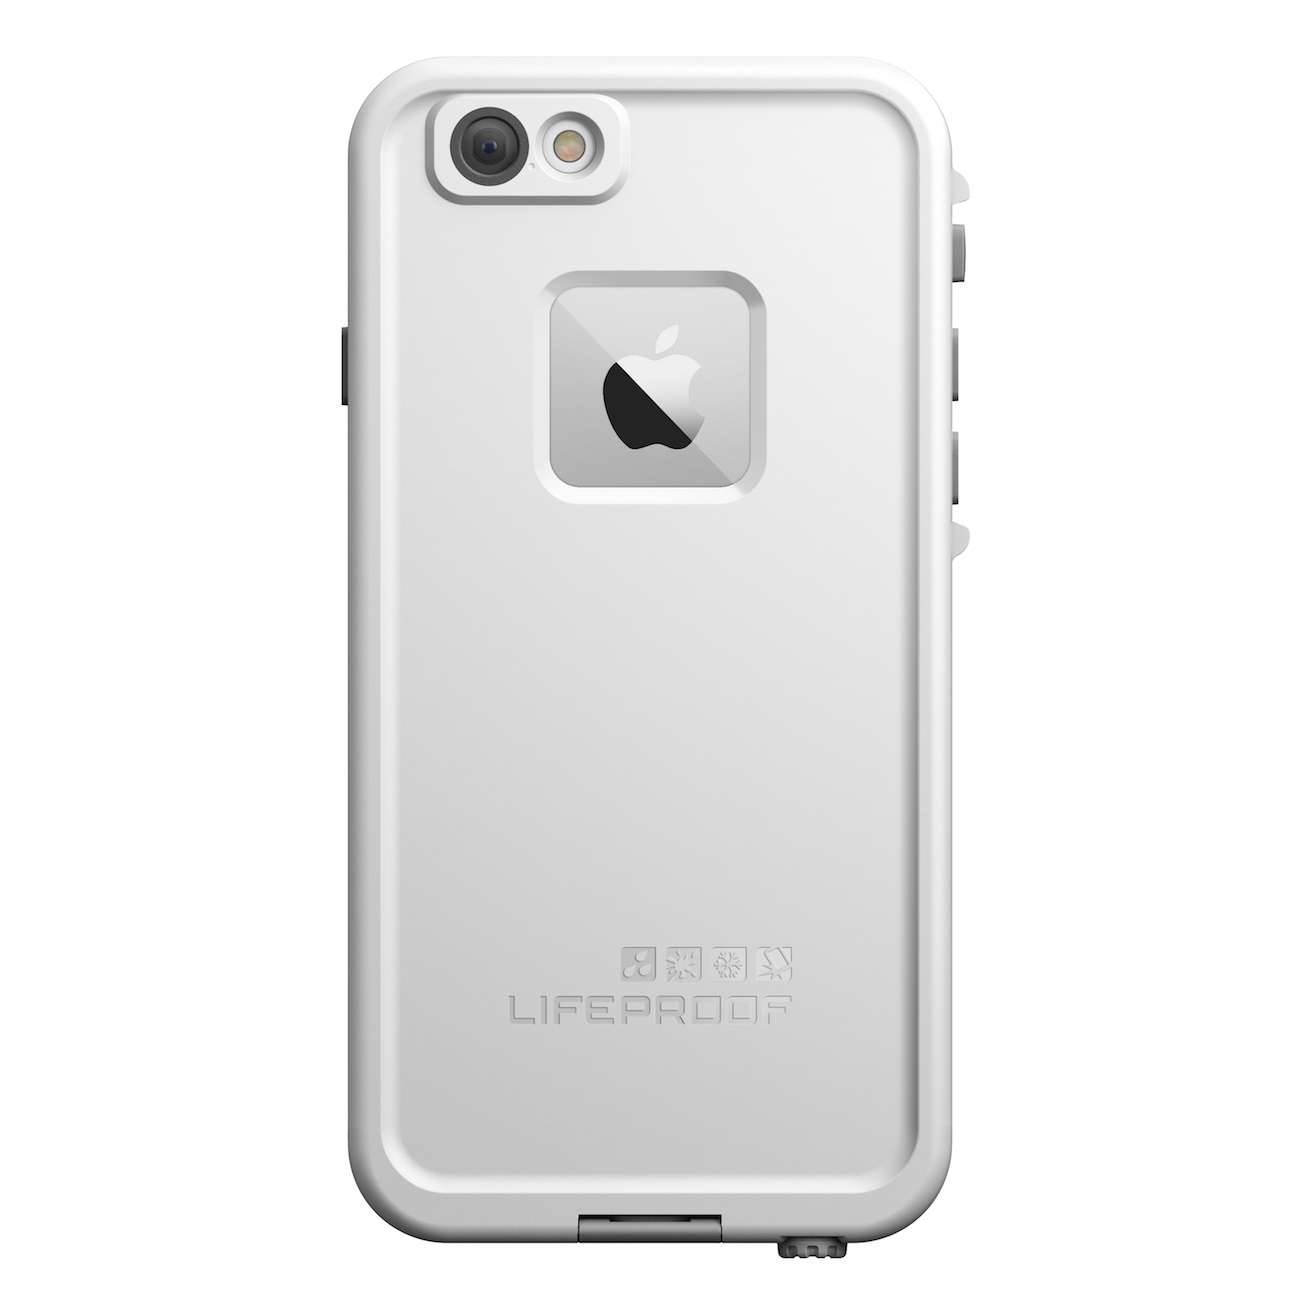 Lifeproof Fre dla iPhone 6 - recenzja recenzje, akcesoria wodoszczelny lifeproof, waterproof iPhone 6, Lifeproof Fre, lifeproof for iPhone 6, LifeProof, iPhone 6   PROD AMP600 Fre White Rear Straight 141111 3000x3000